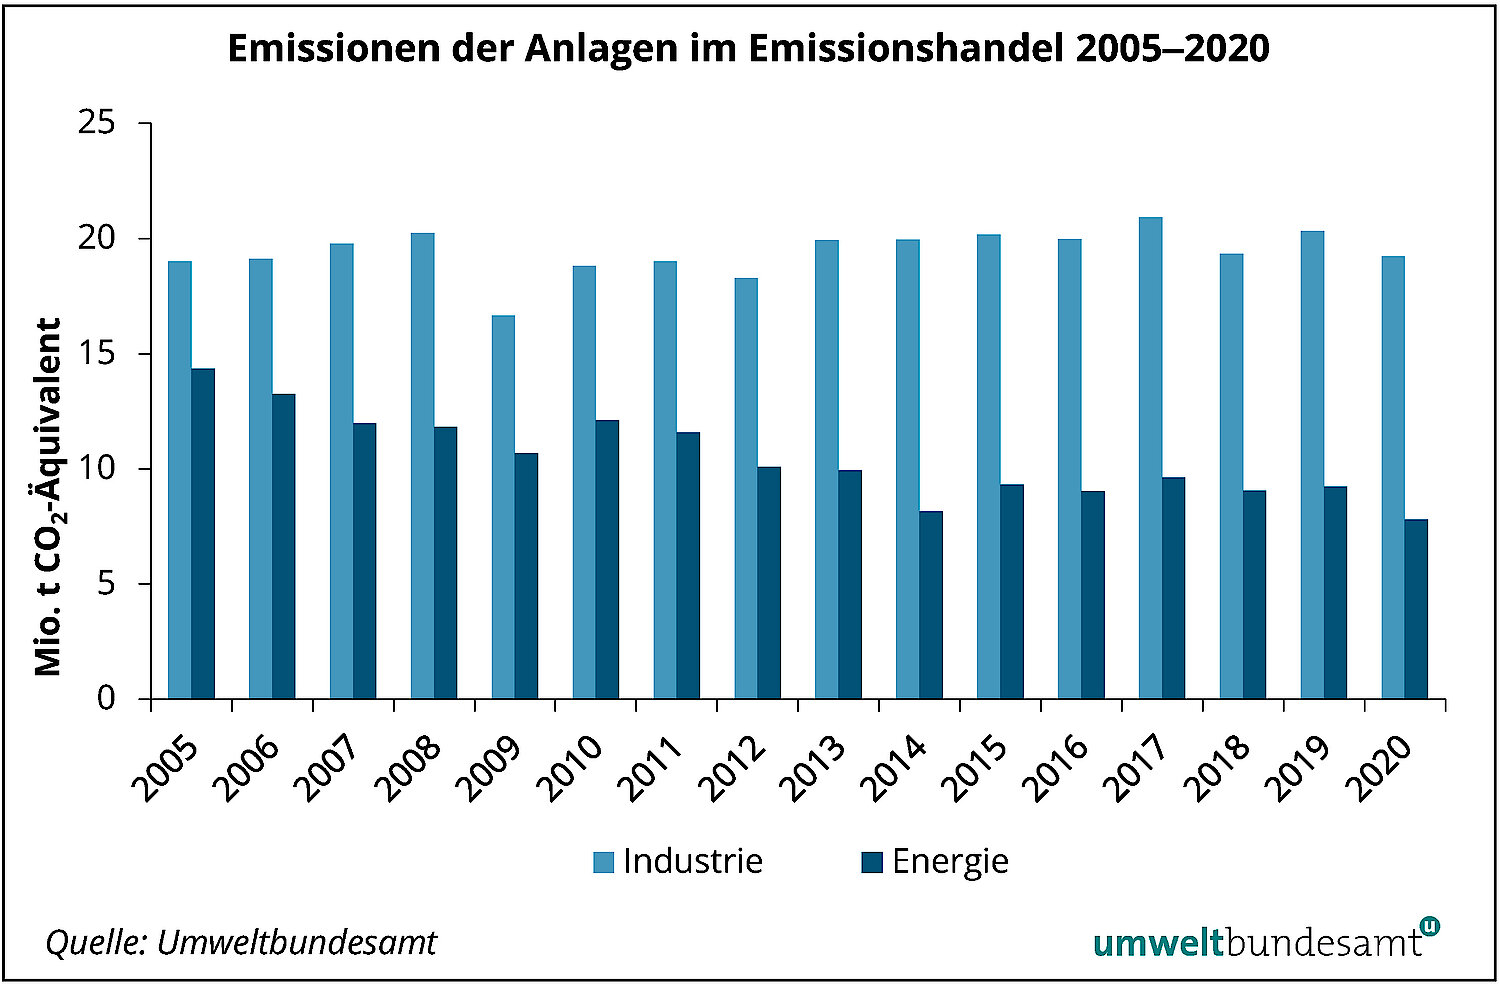 Die Emissionen der Anlagen im Emissionshandel sind zwischen 2005 und 2020 im Bereich Industrie relativ konstant geblieben, im Bereich Energie jedoch etwas gesunken.